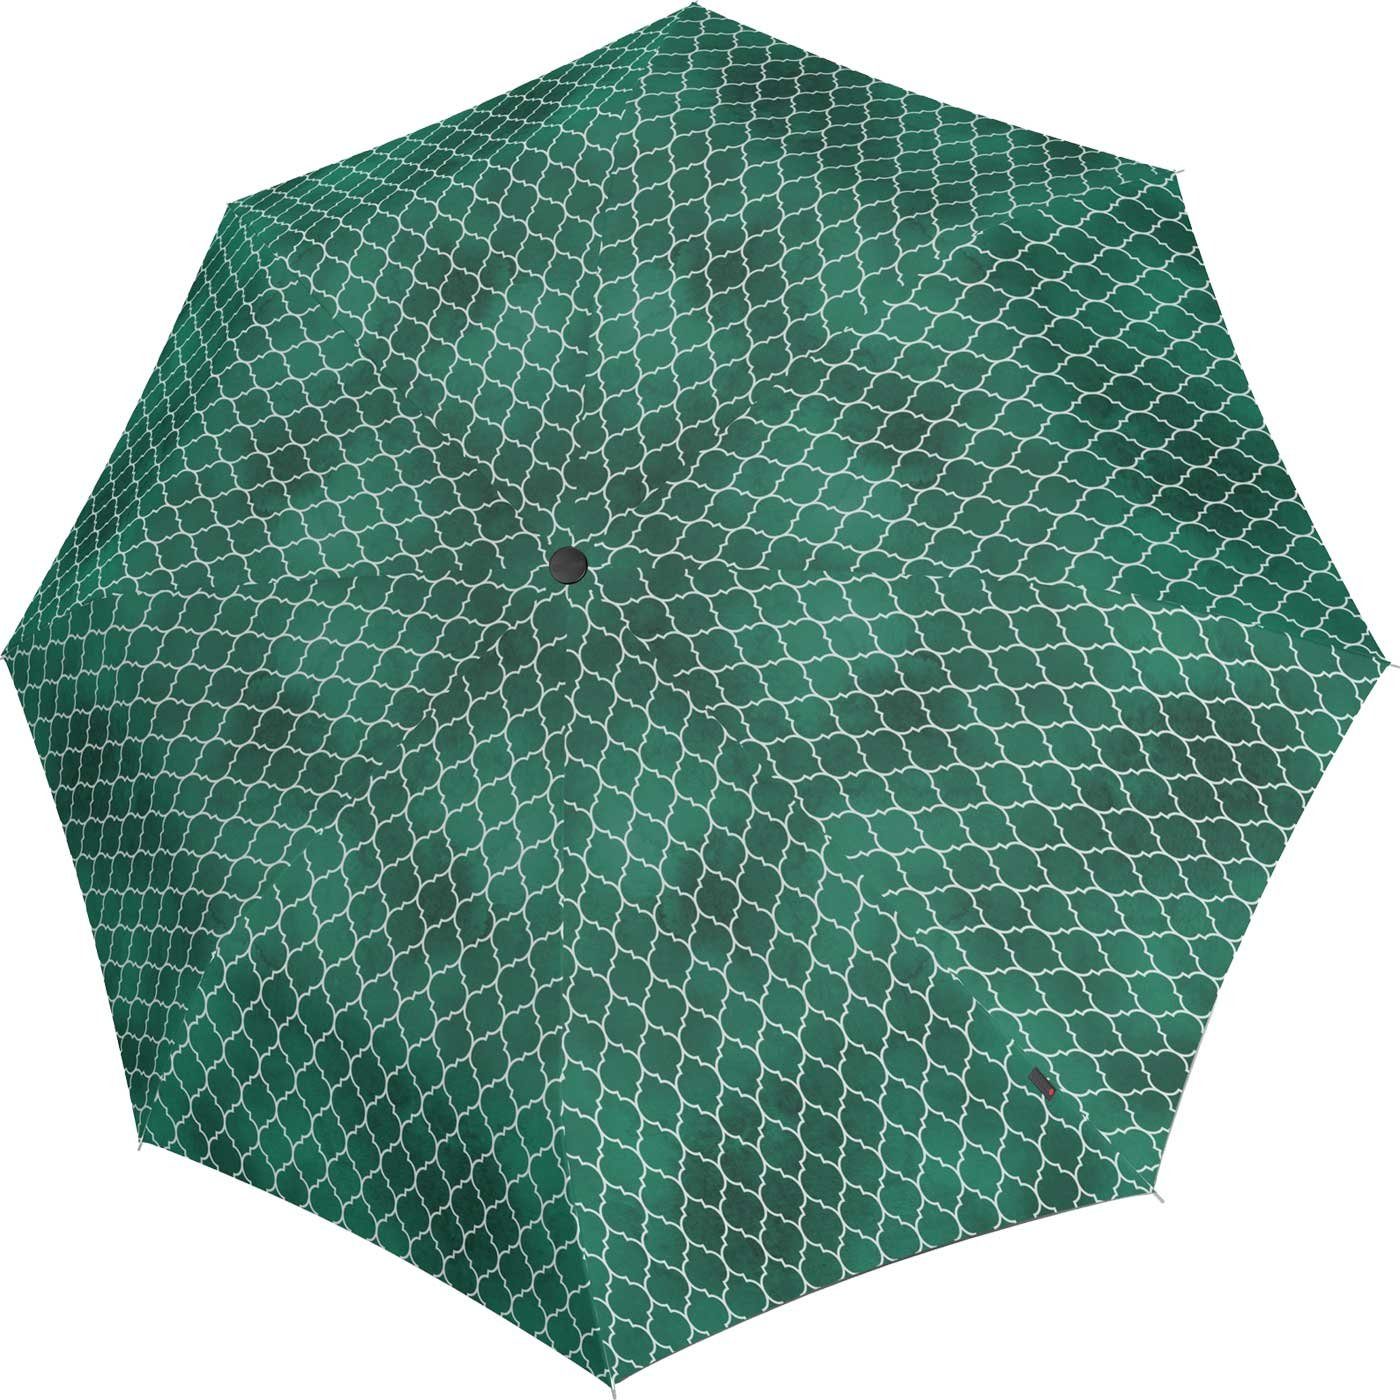 Knirps® Langregenschirm Damen groß T.760 und Regenerate, grün stabil - Auf-Automatik UV-Schutz